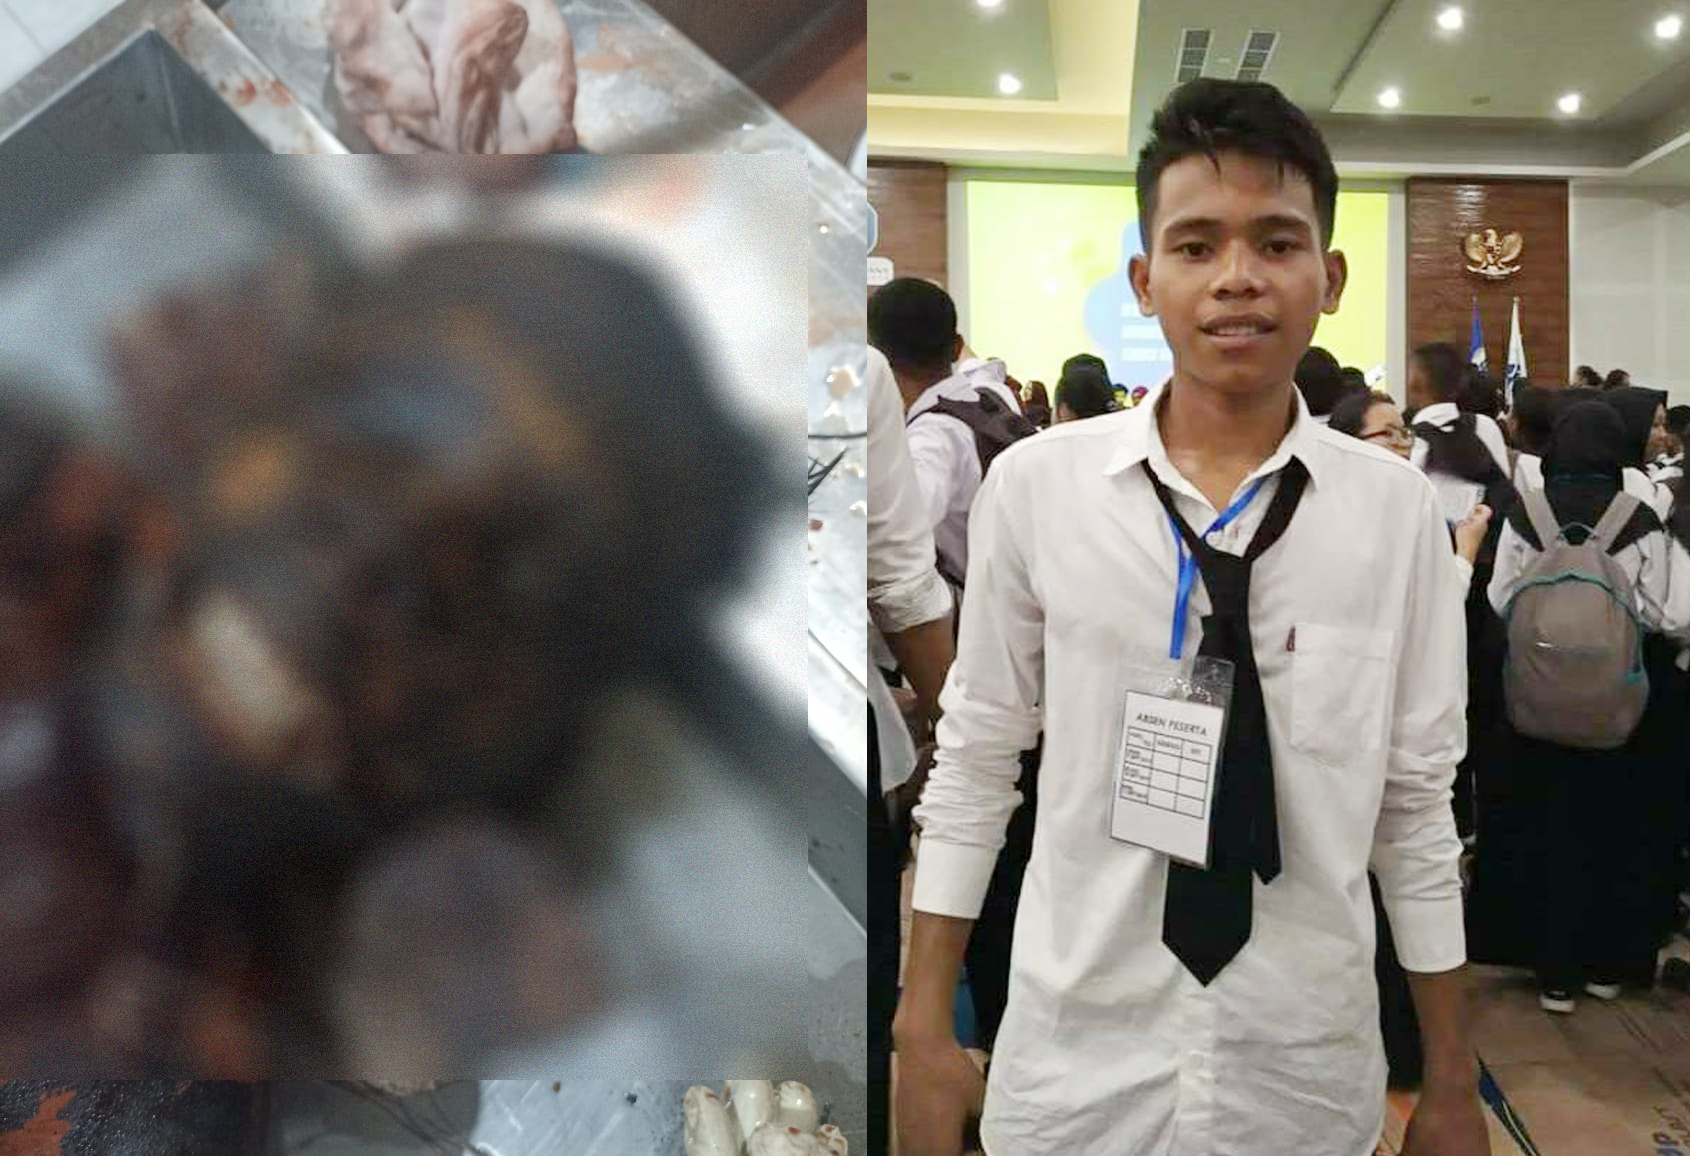 Jenazah Mr X Yang Ditemukan Terbakar di Kali Liliba Diduga Mahasiswa Yogyakarta Asal Sumba Barat Daya